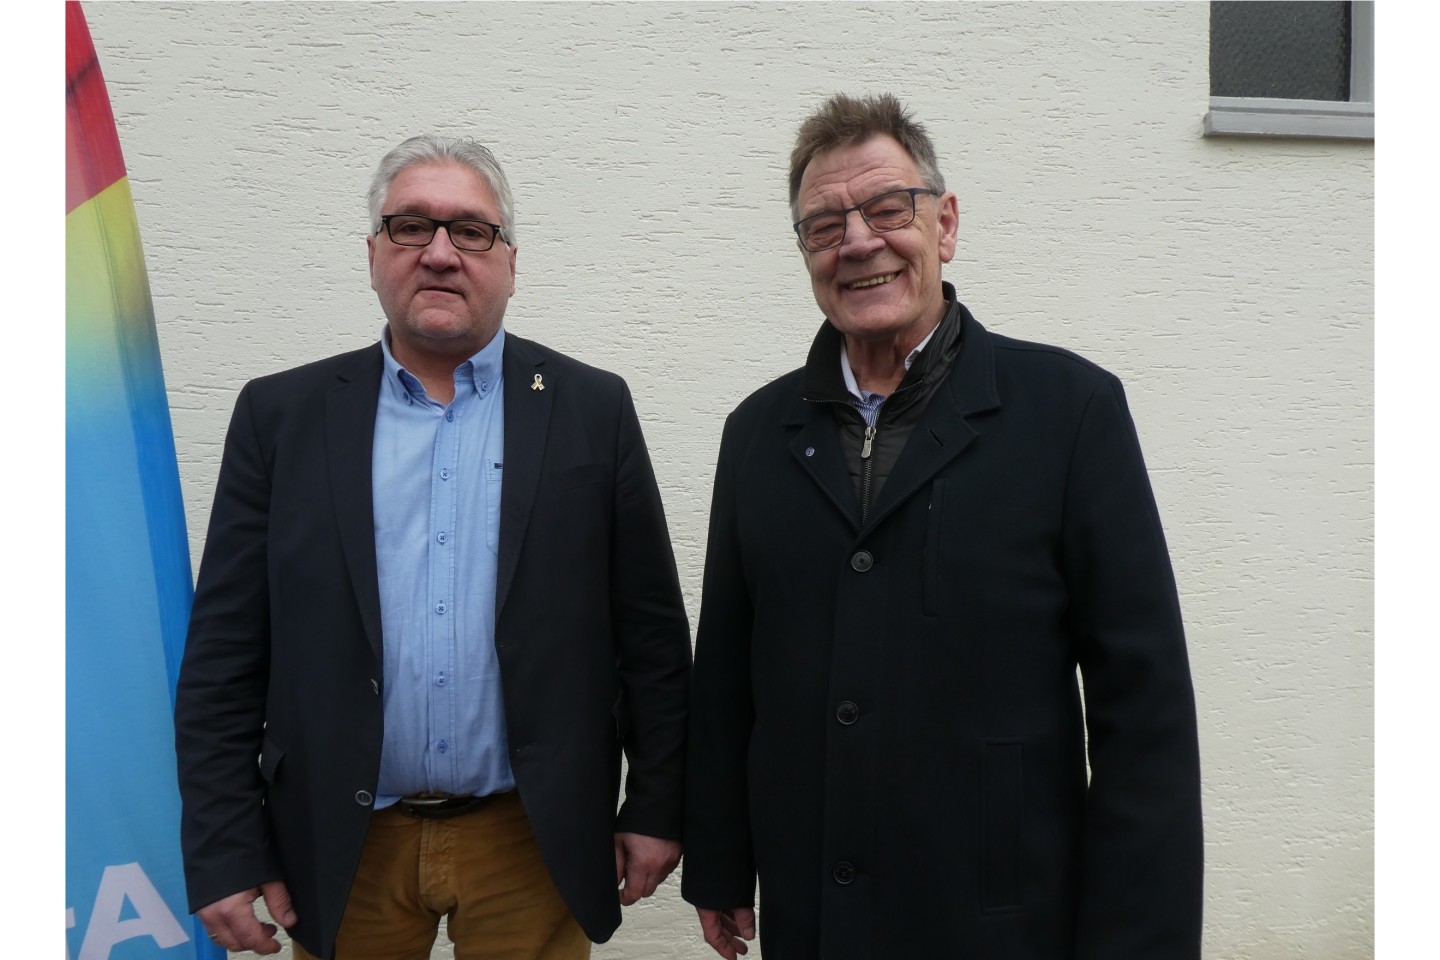 Norbert Senges aus Warburg und Klaus Lange aus Bad Driburg mit großer Mehrheit gewählt